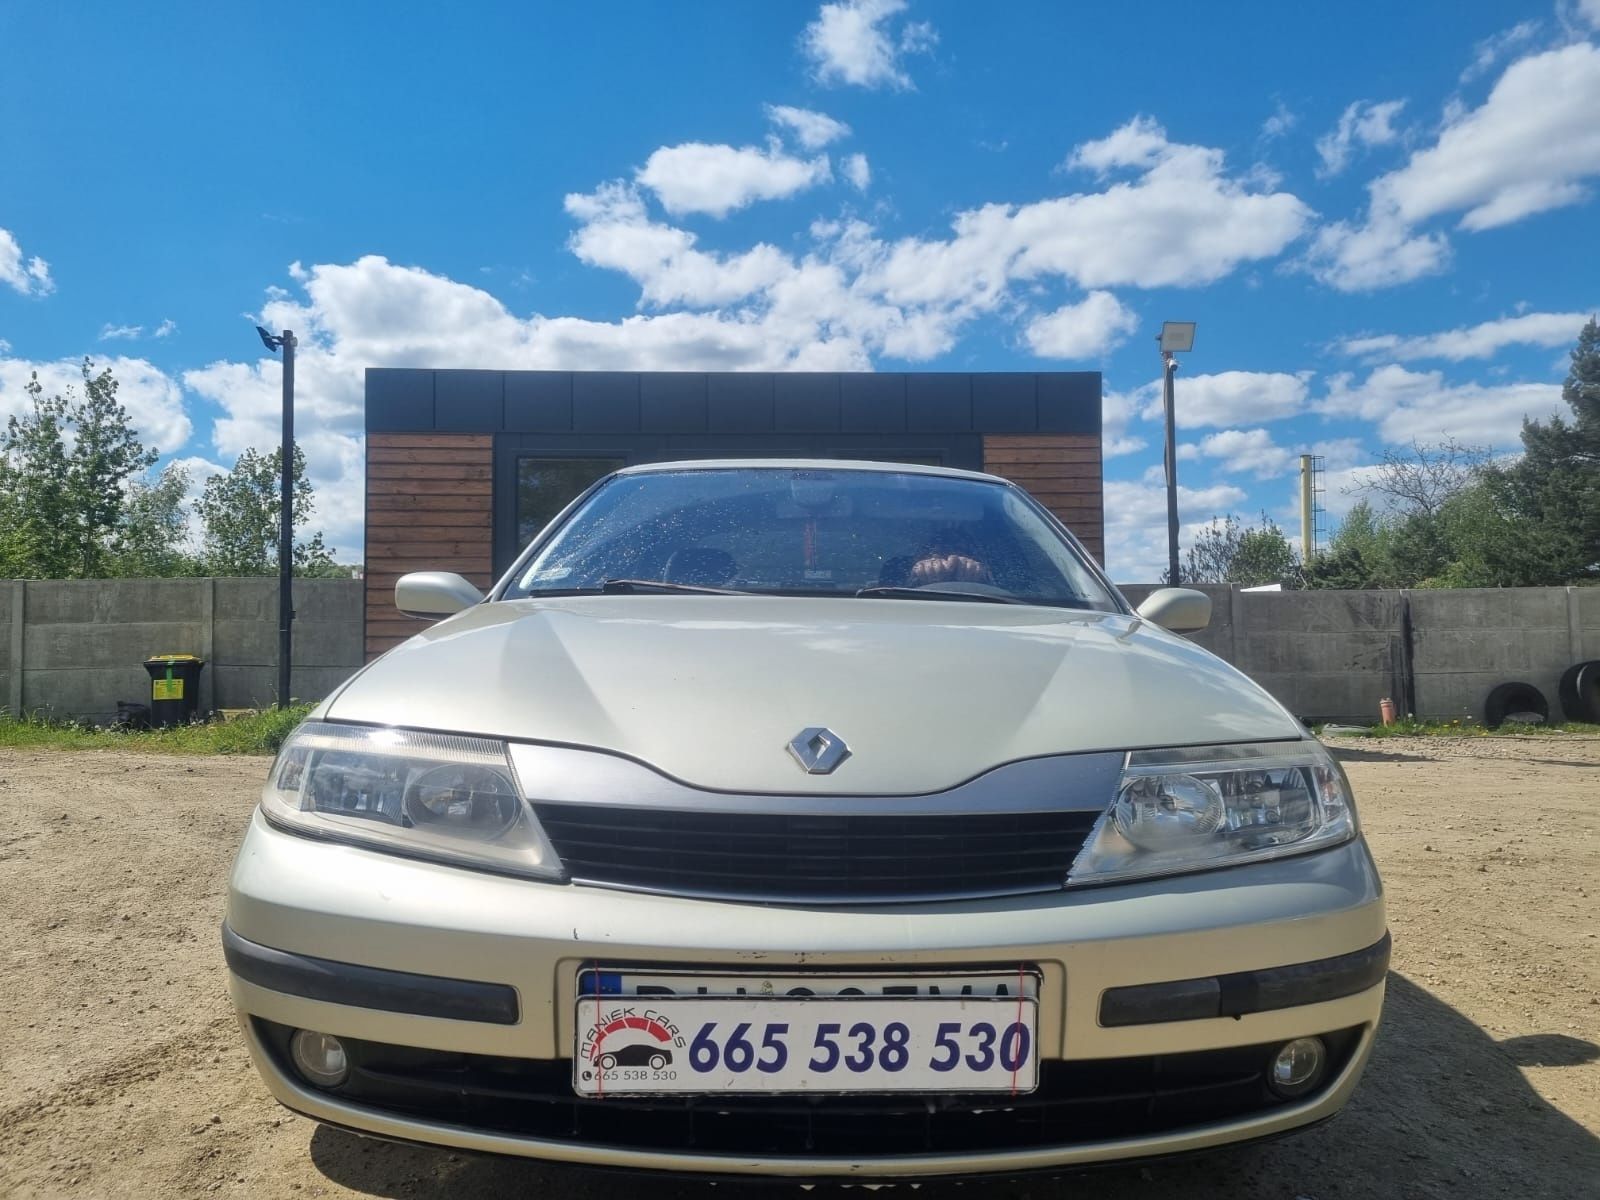 Renault Laguna 1.8 benzyna 2001r // Okazja // Opłaty // Zamiana